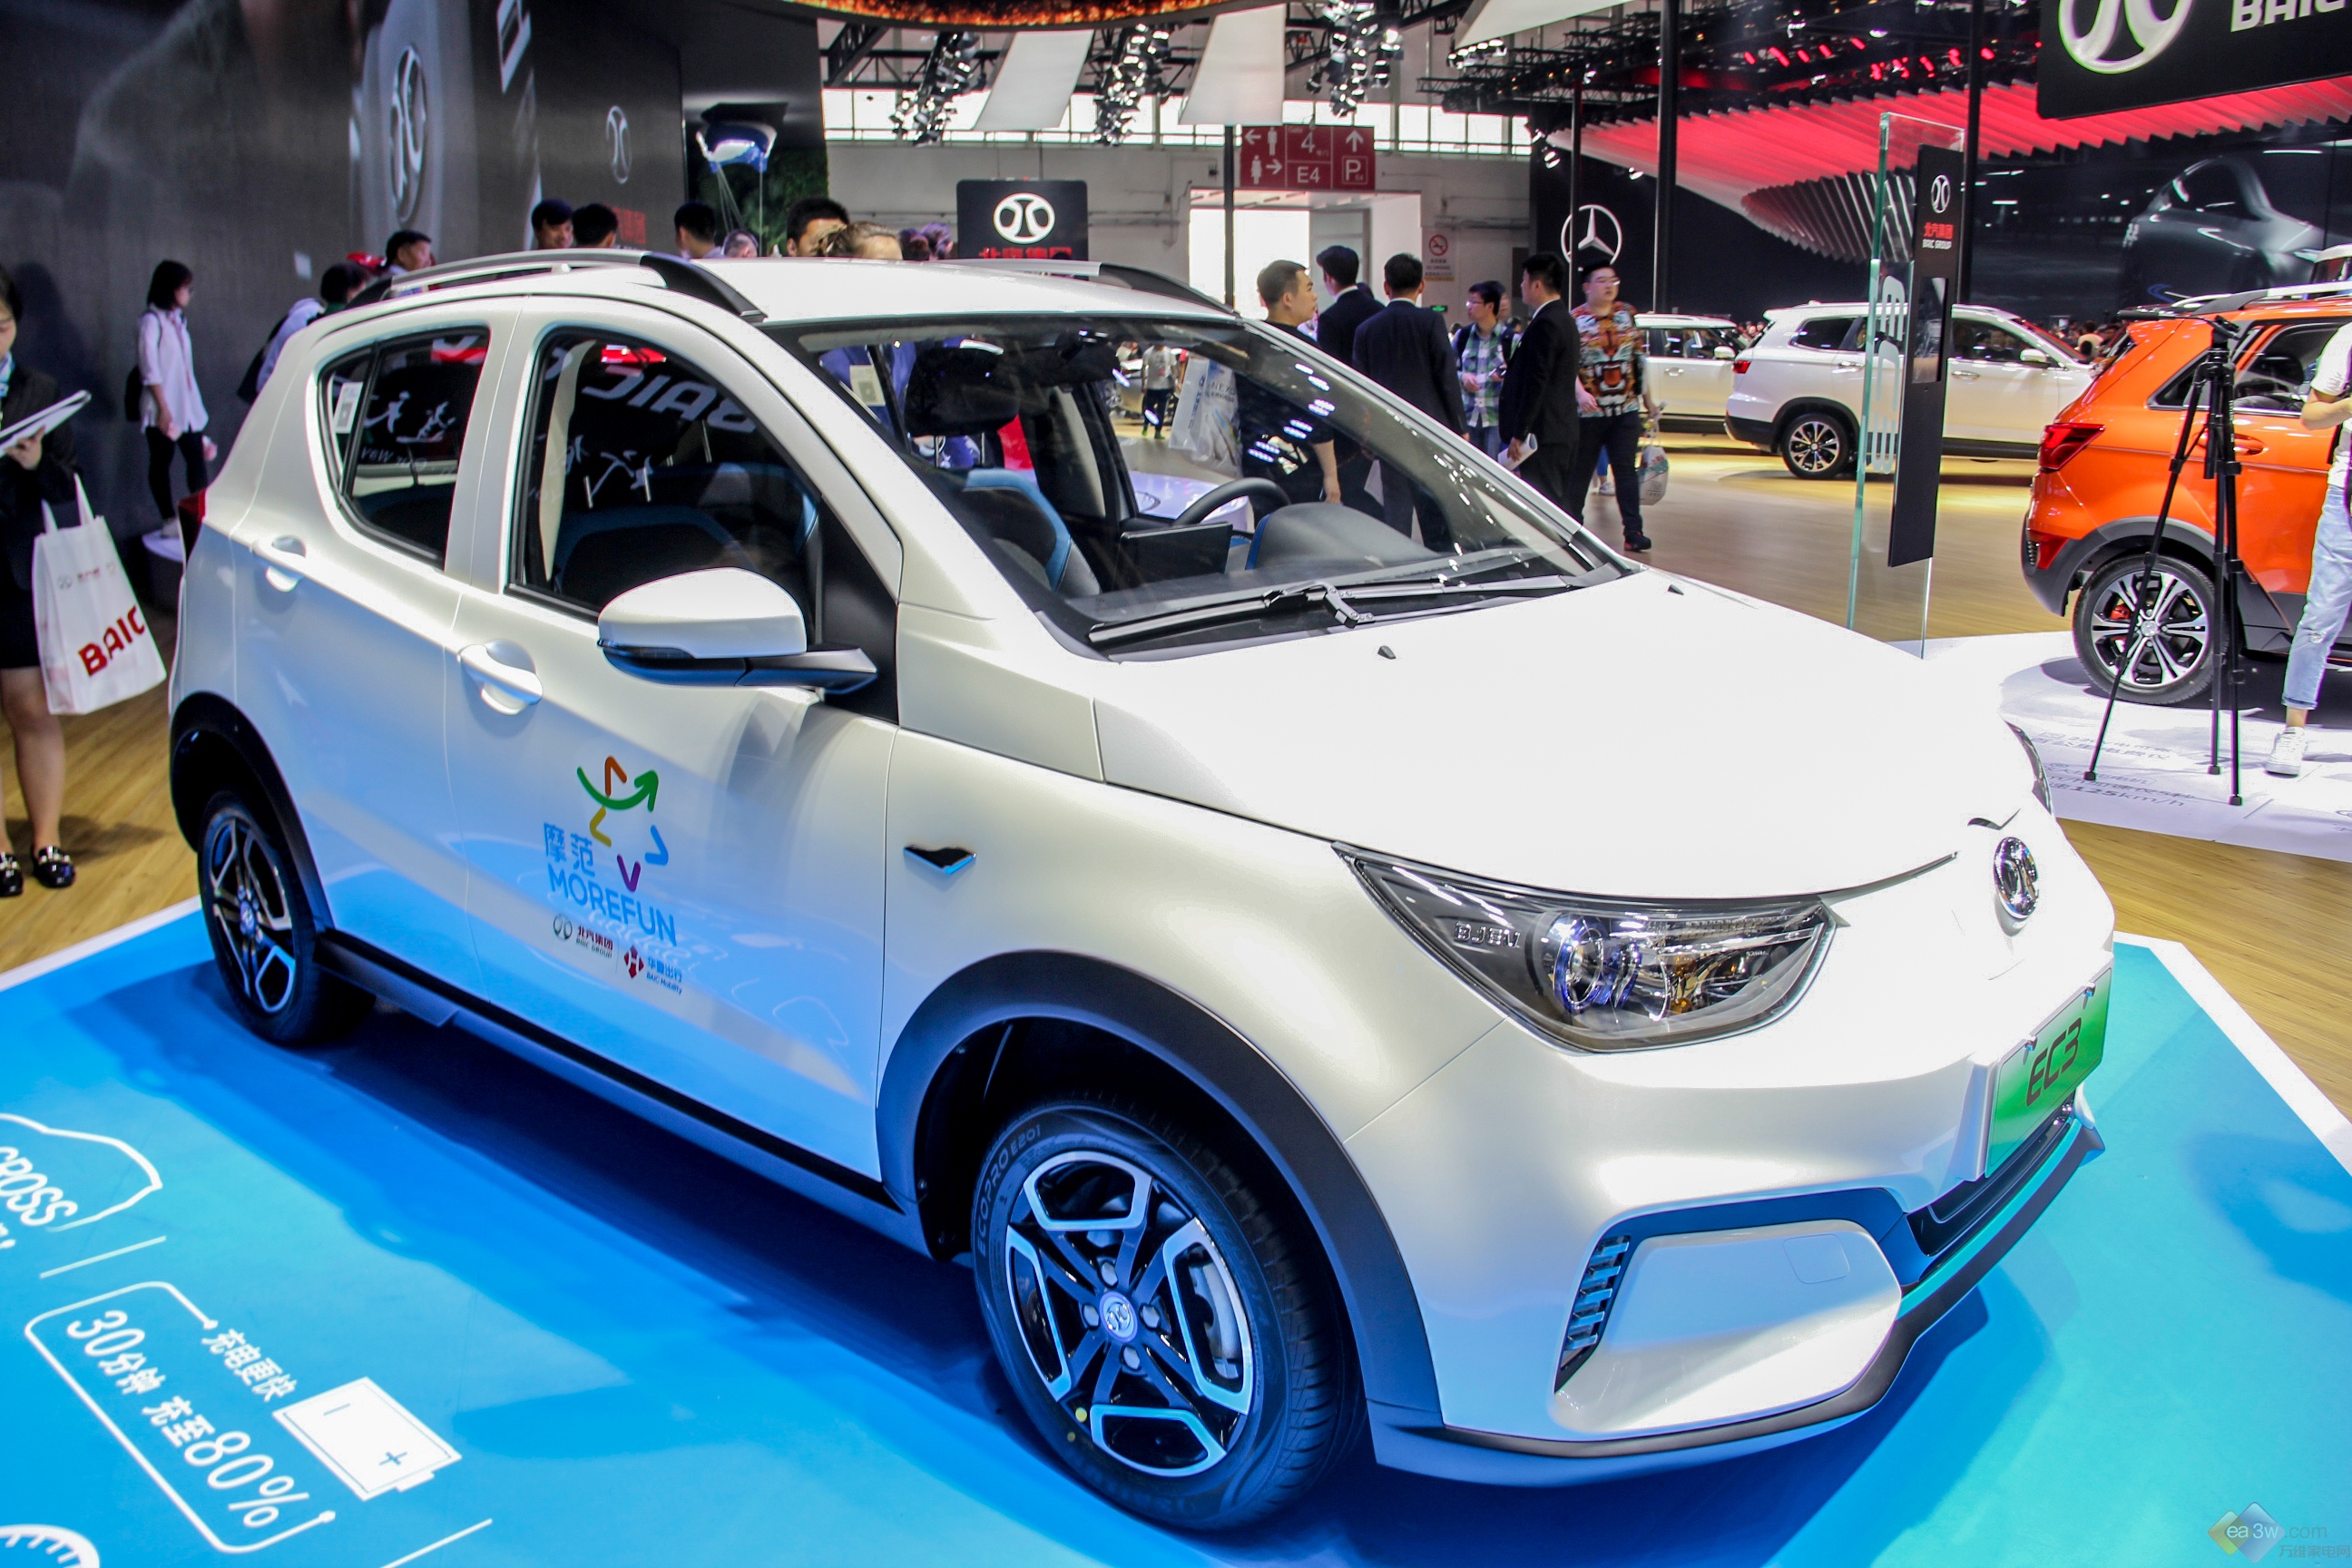 聚焦2018北京车展,看看新能源汽车又有怎样的